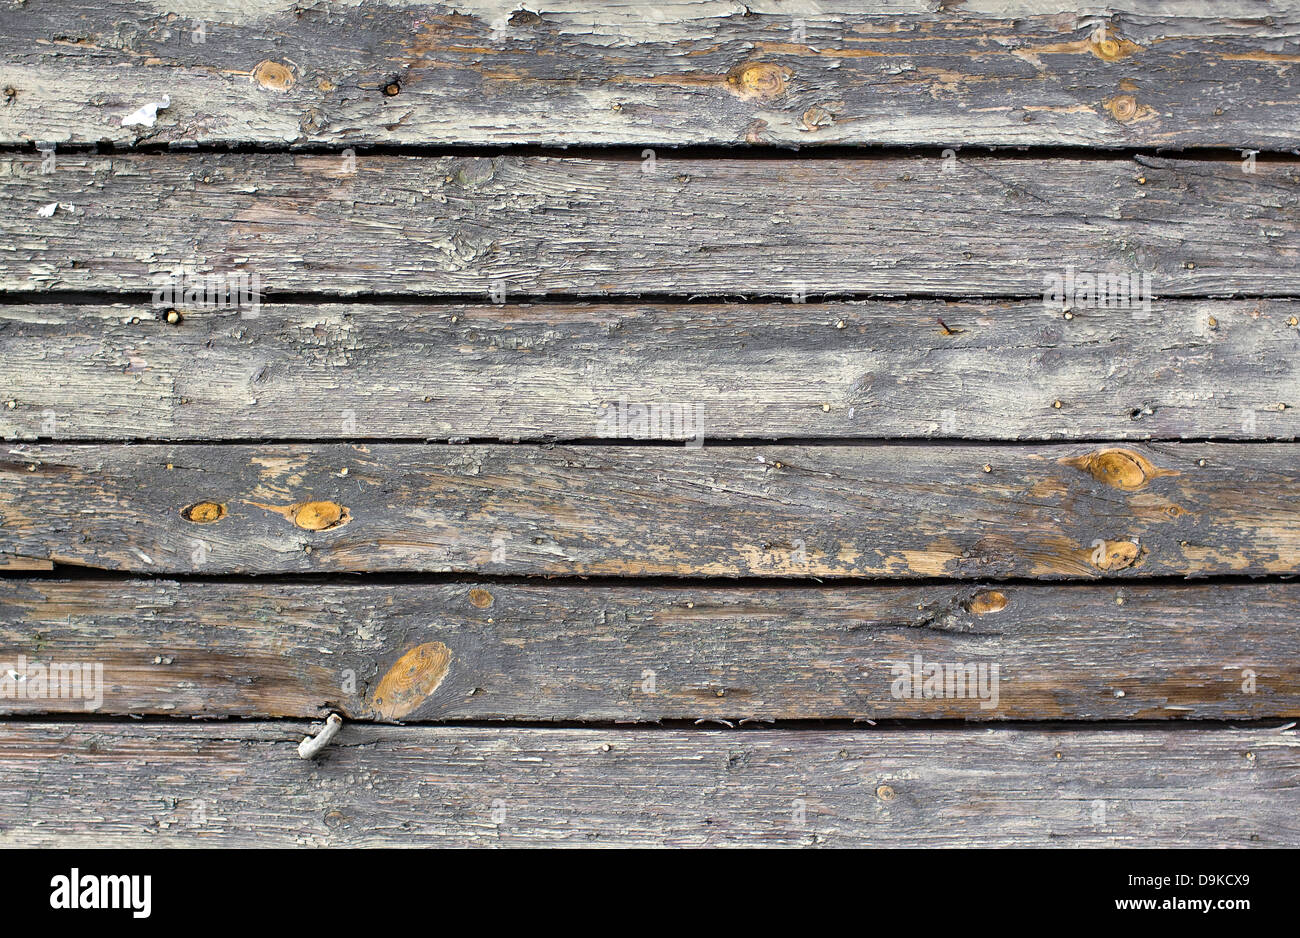 Weathered wood background Stock Photo